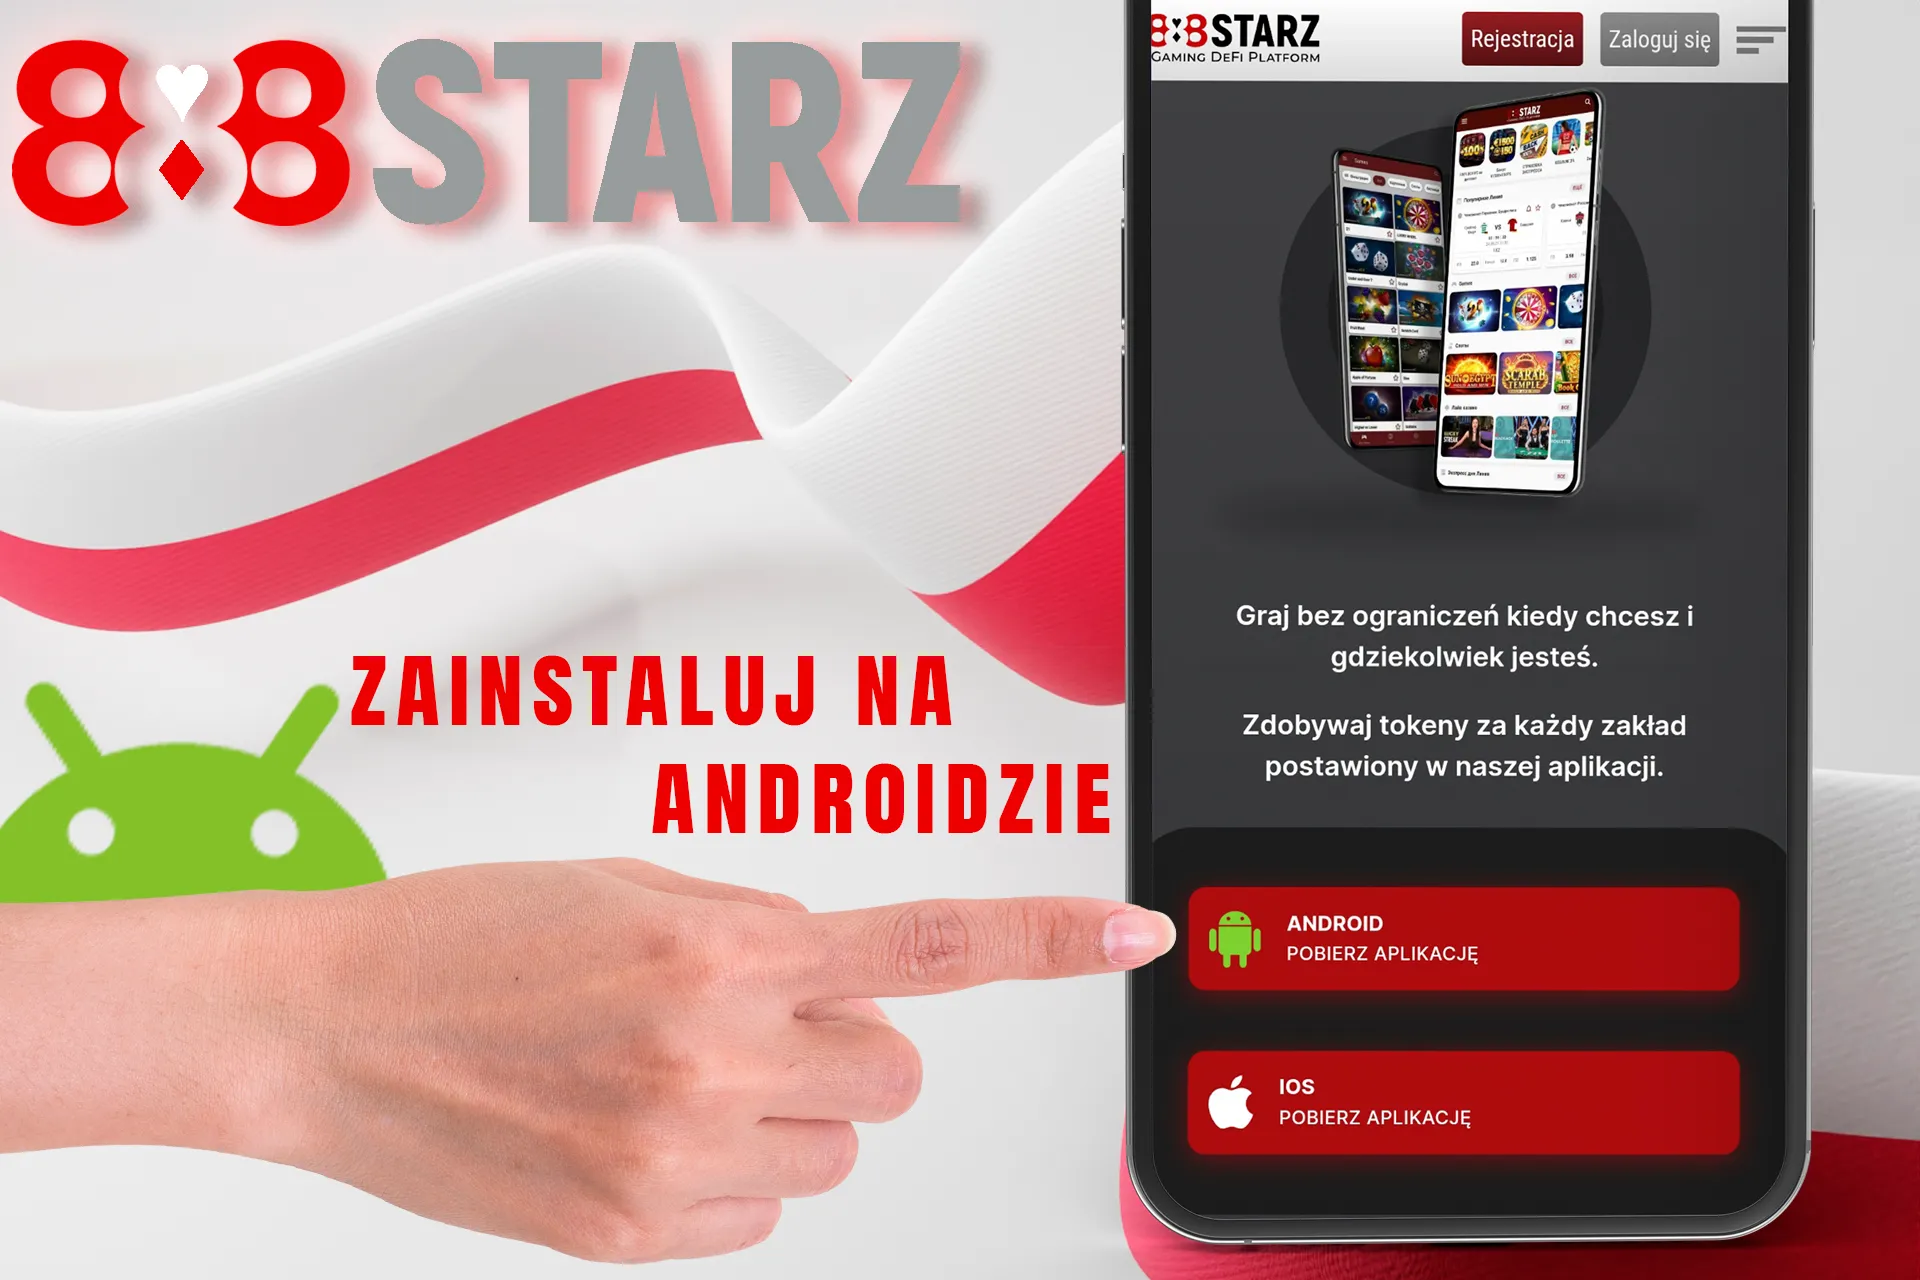 Zainstaluj aplikację mobilną 888Starz na Androida